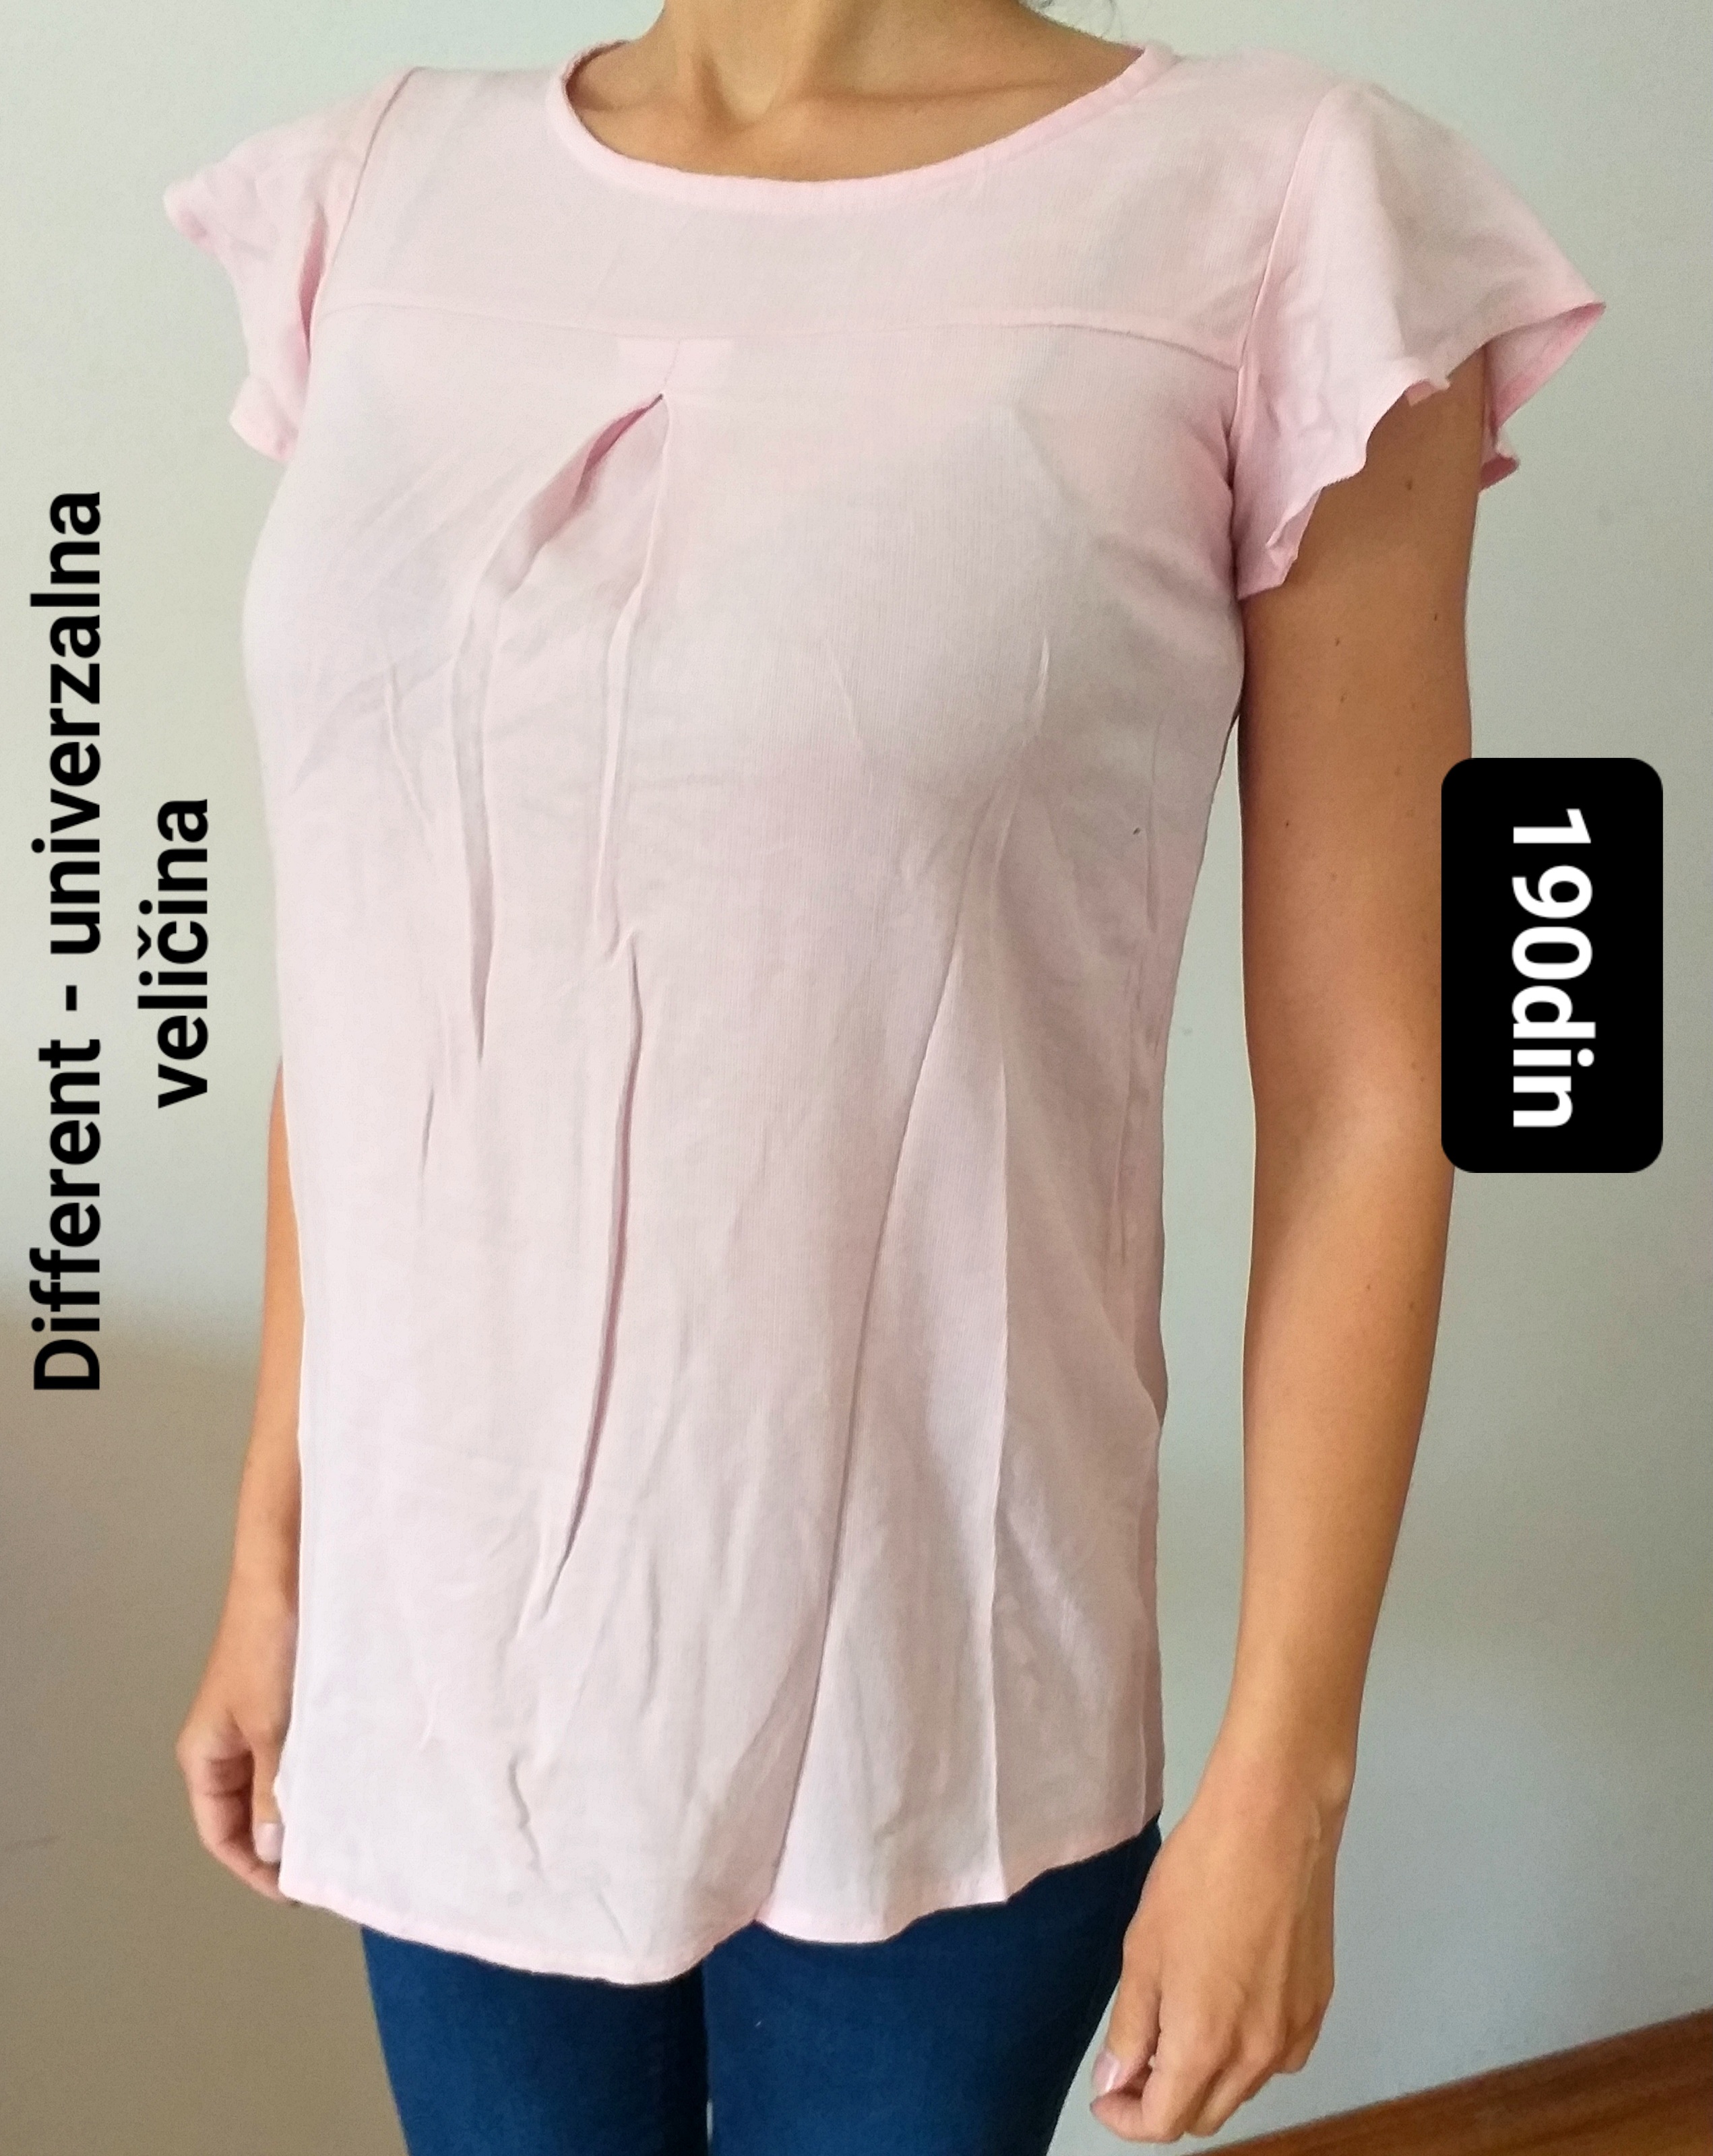 Different ženska bluza majica roze univerzalna veličina